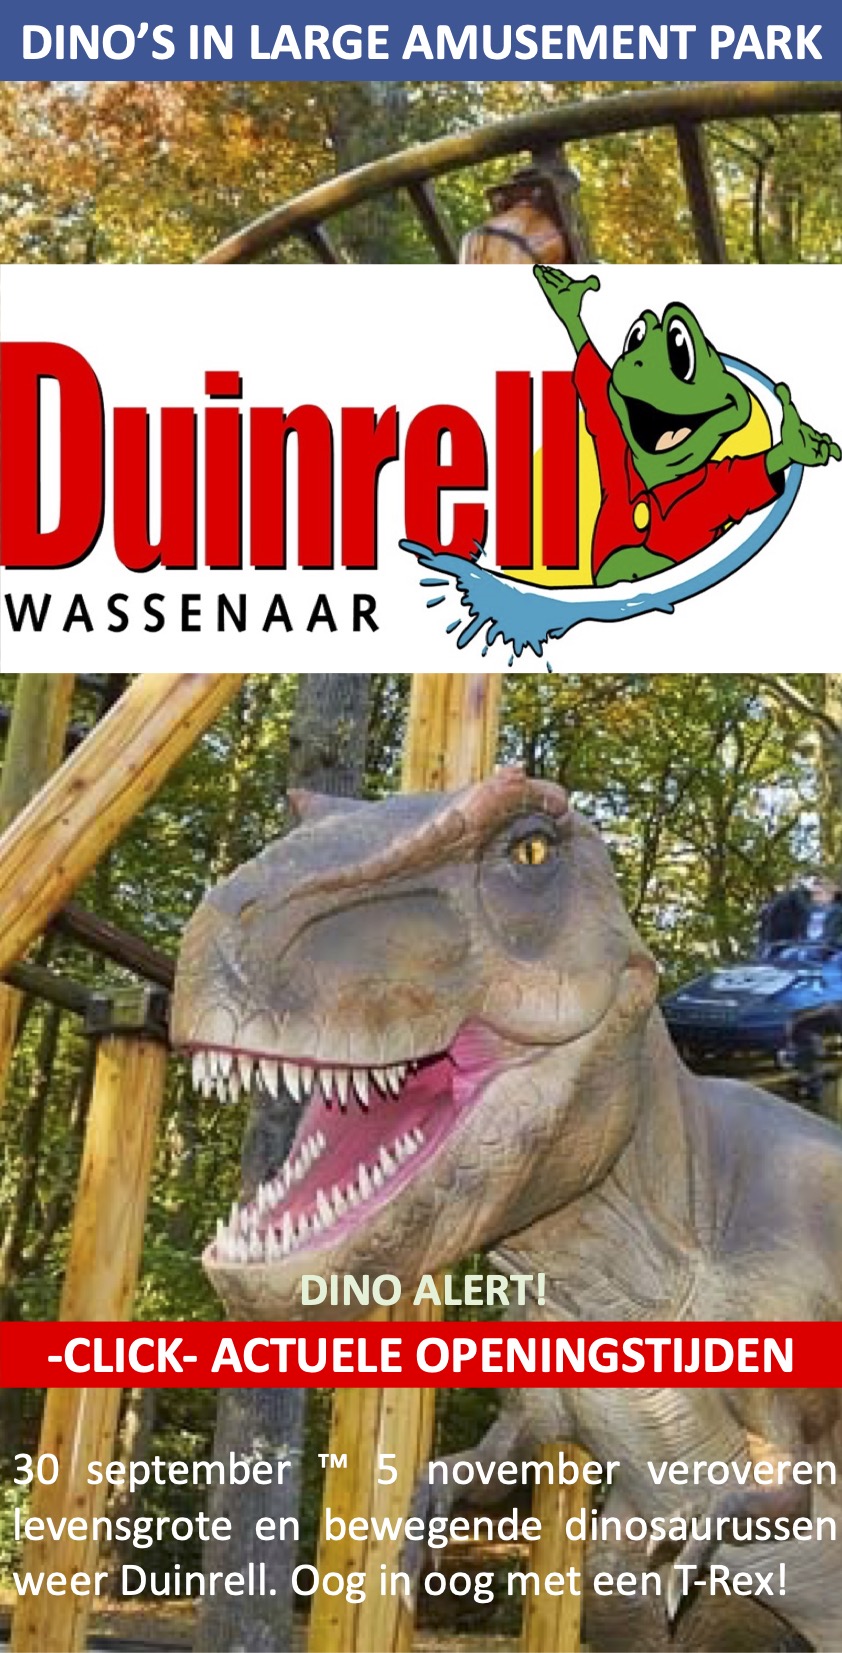 Duinrell Atractiepark Wassenaar oktober